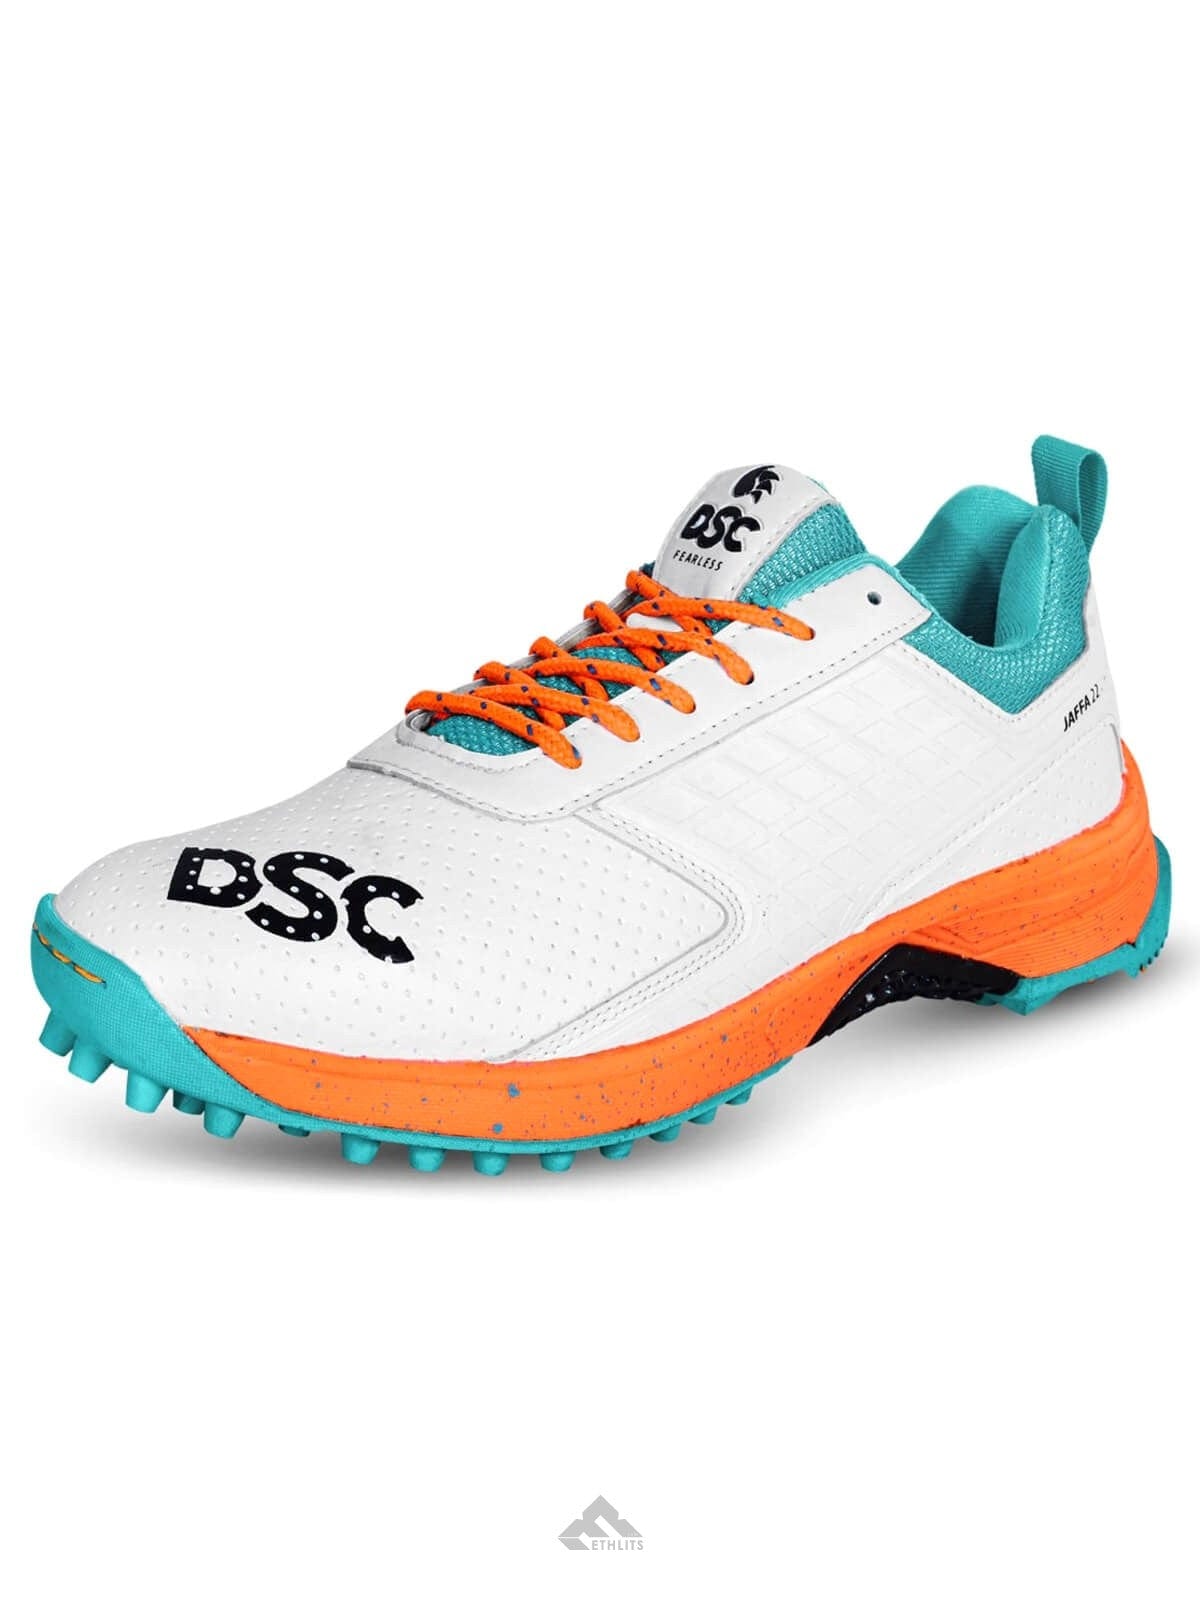 DSC Footwear DSC Jaffa 22 Cricket Rubber Shoes